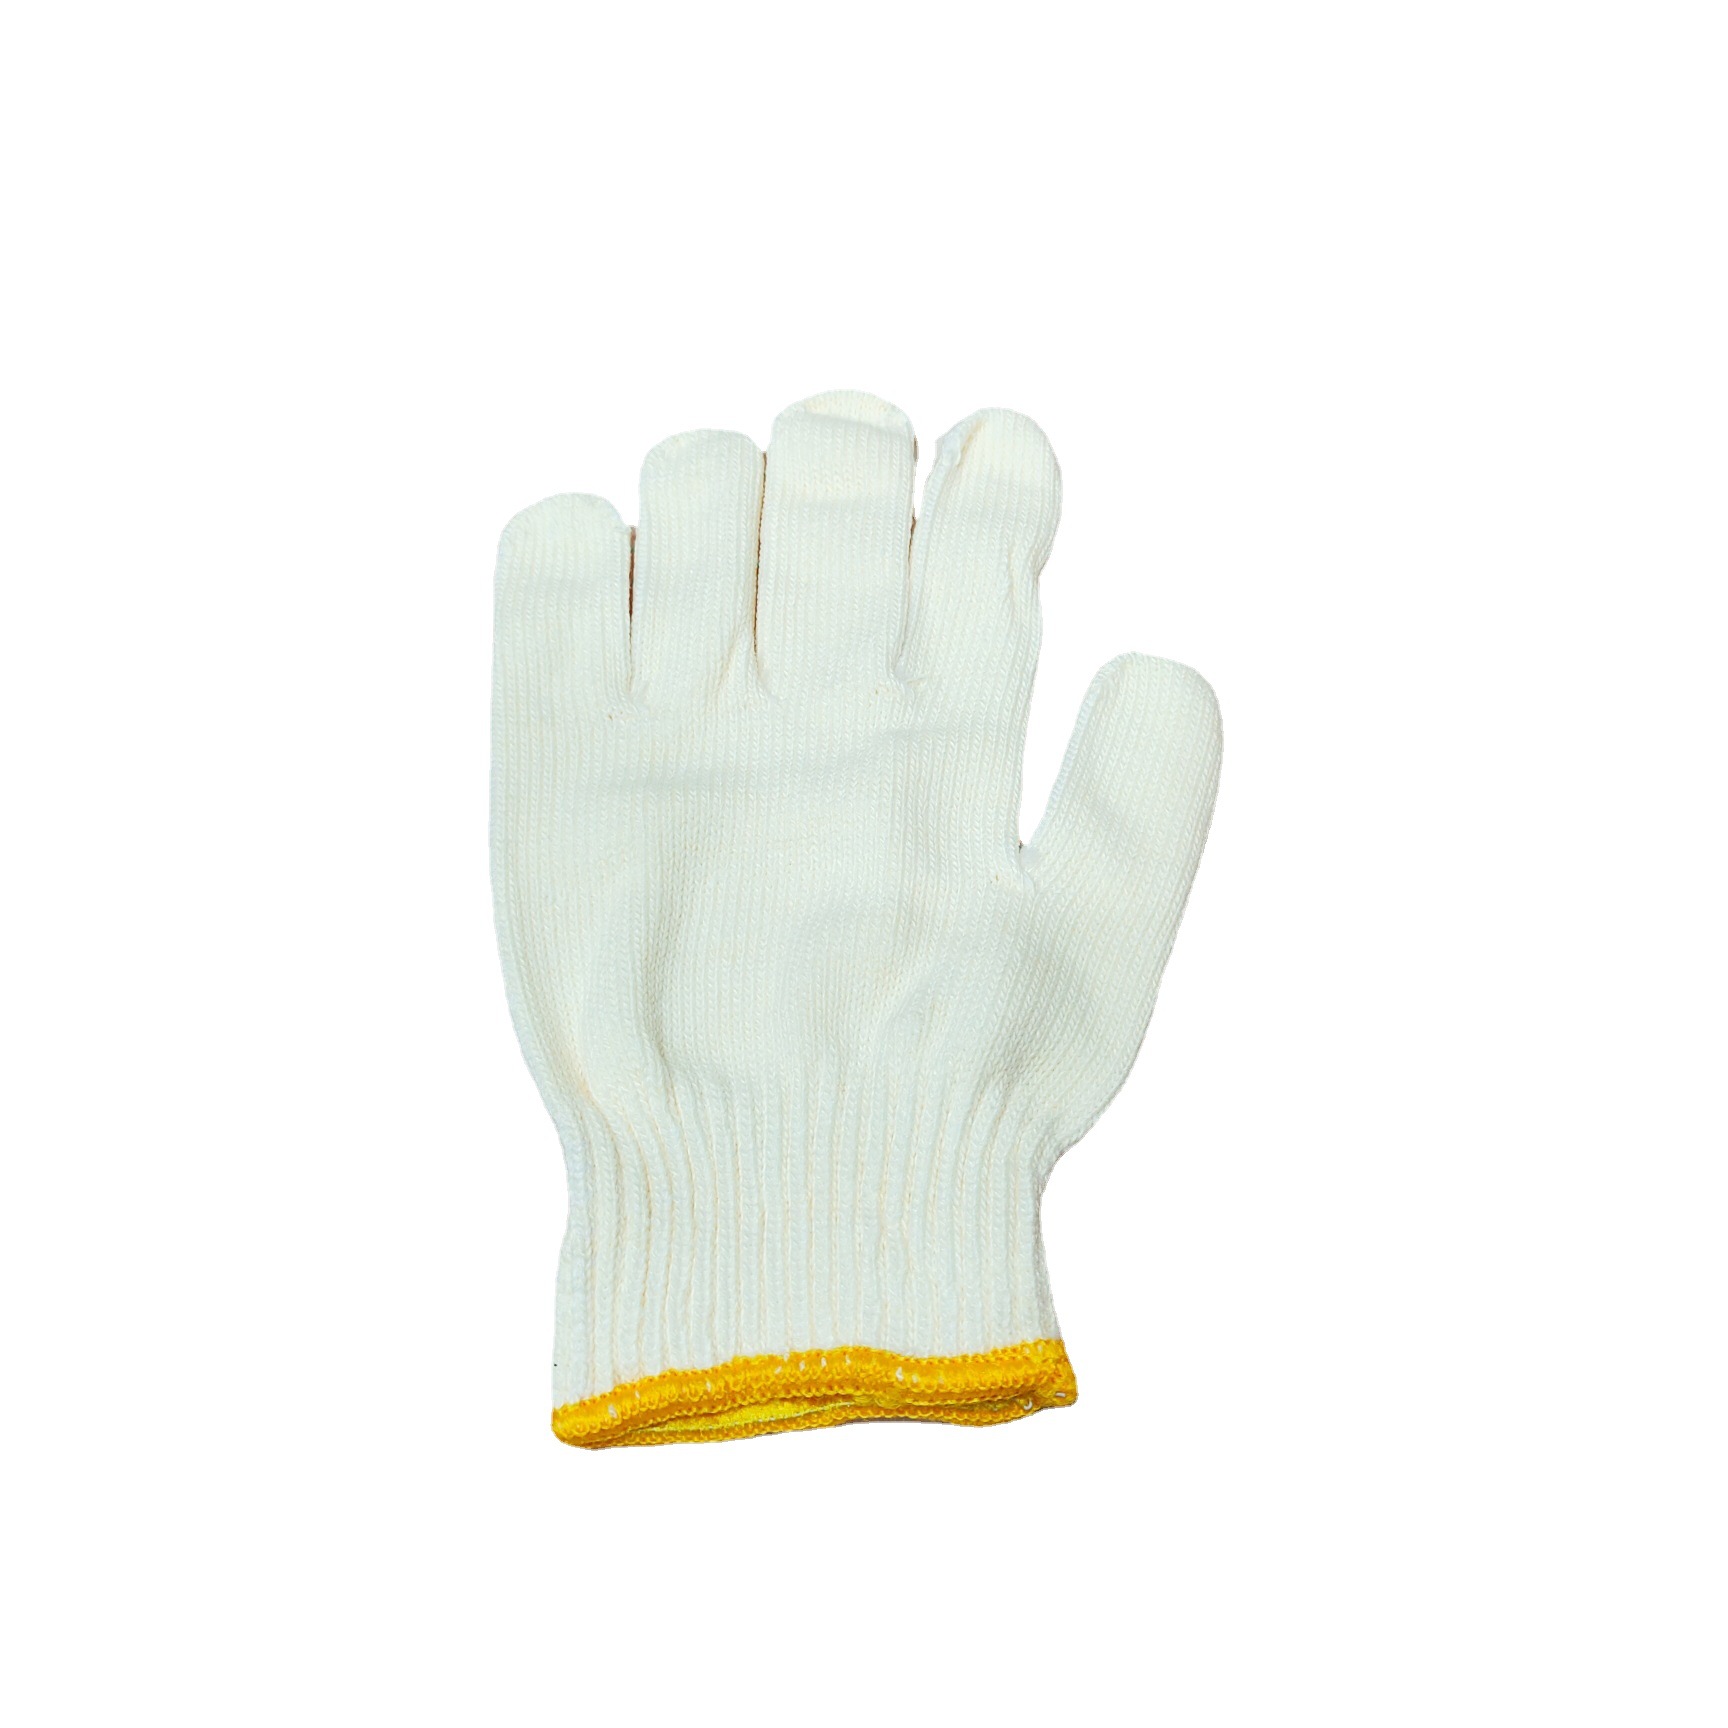 Cotton White Gloves with Yellow Edge